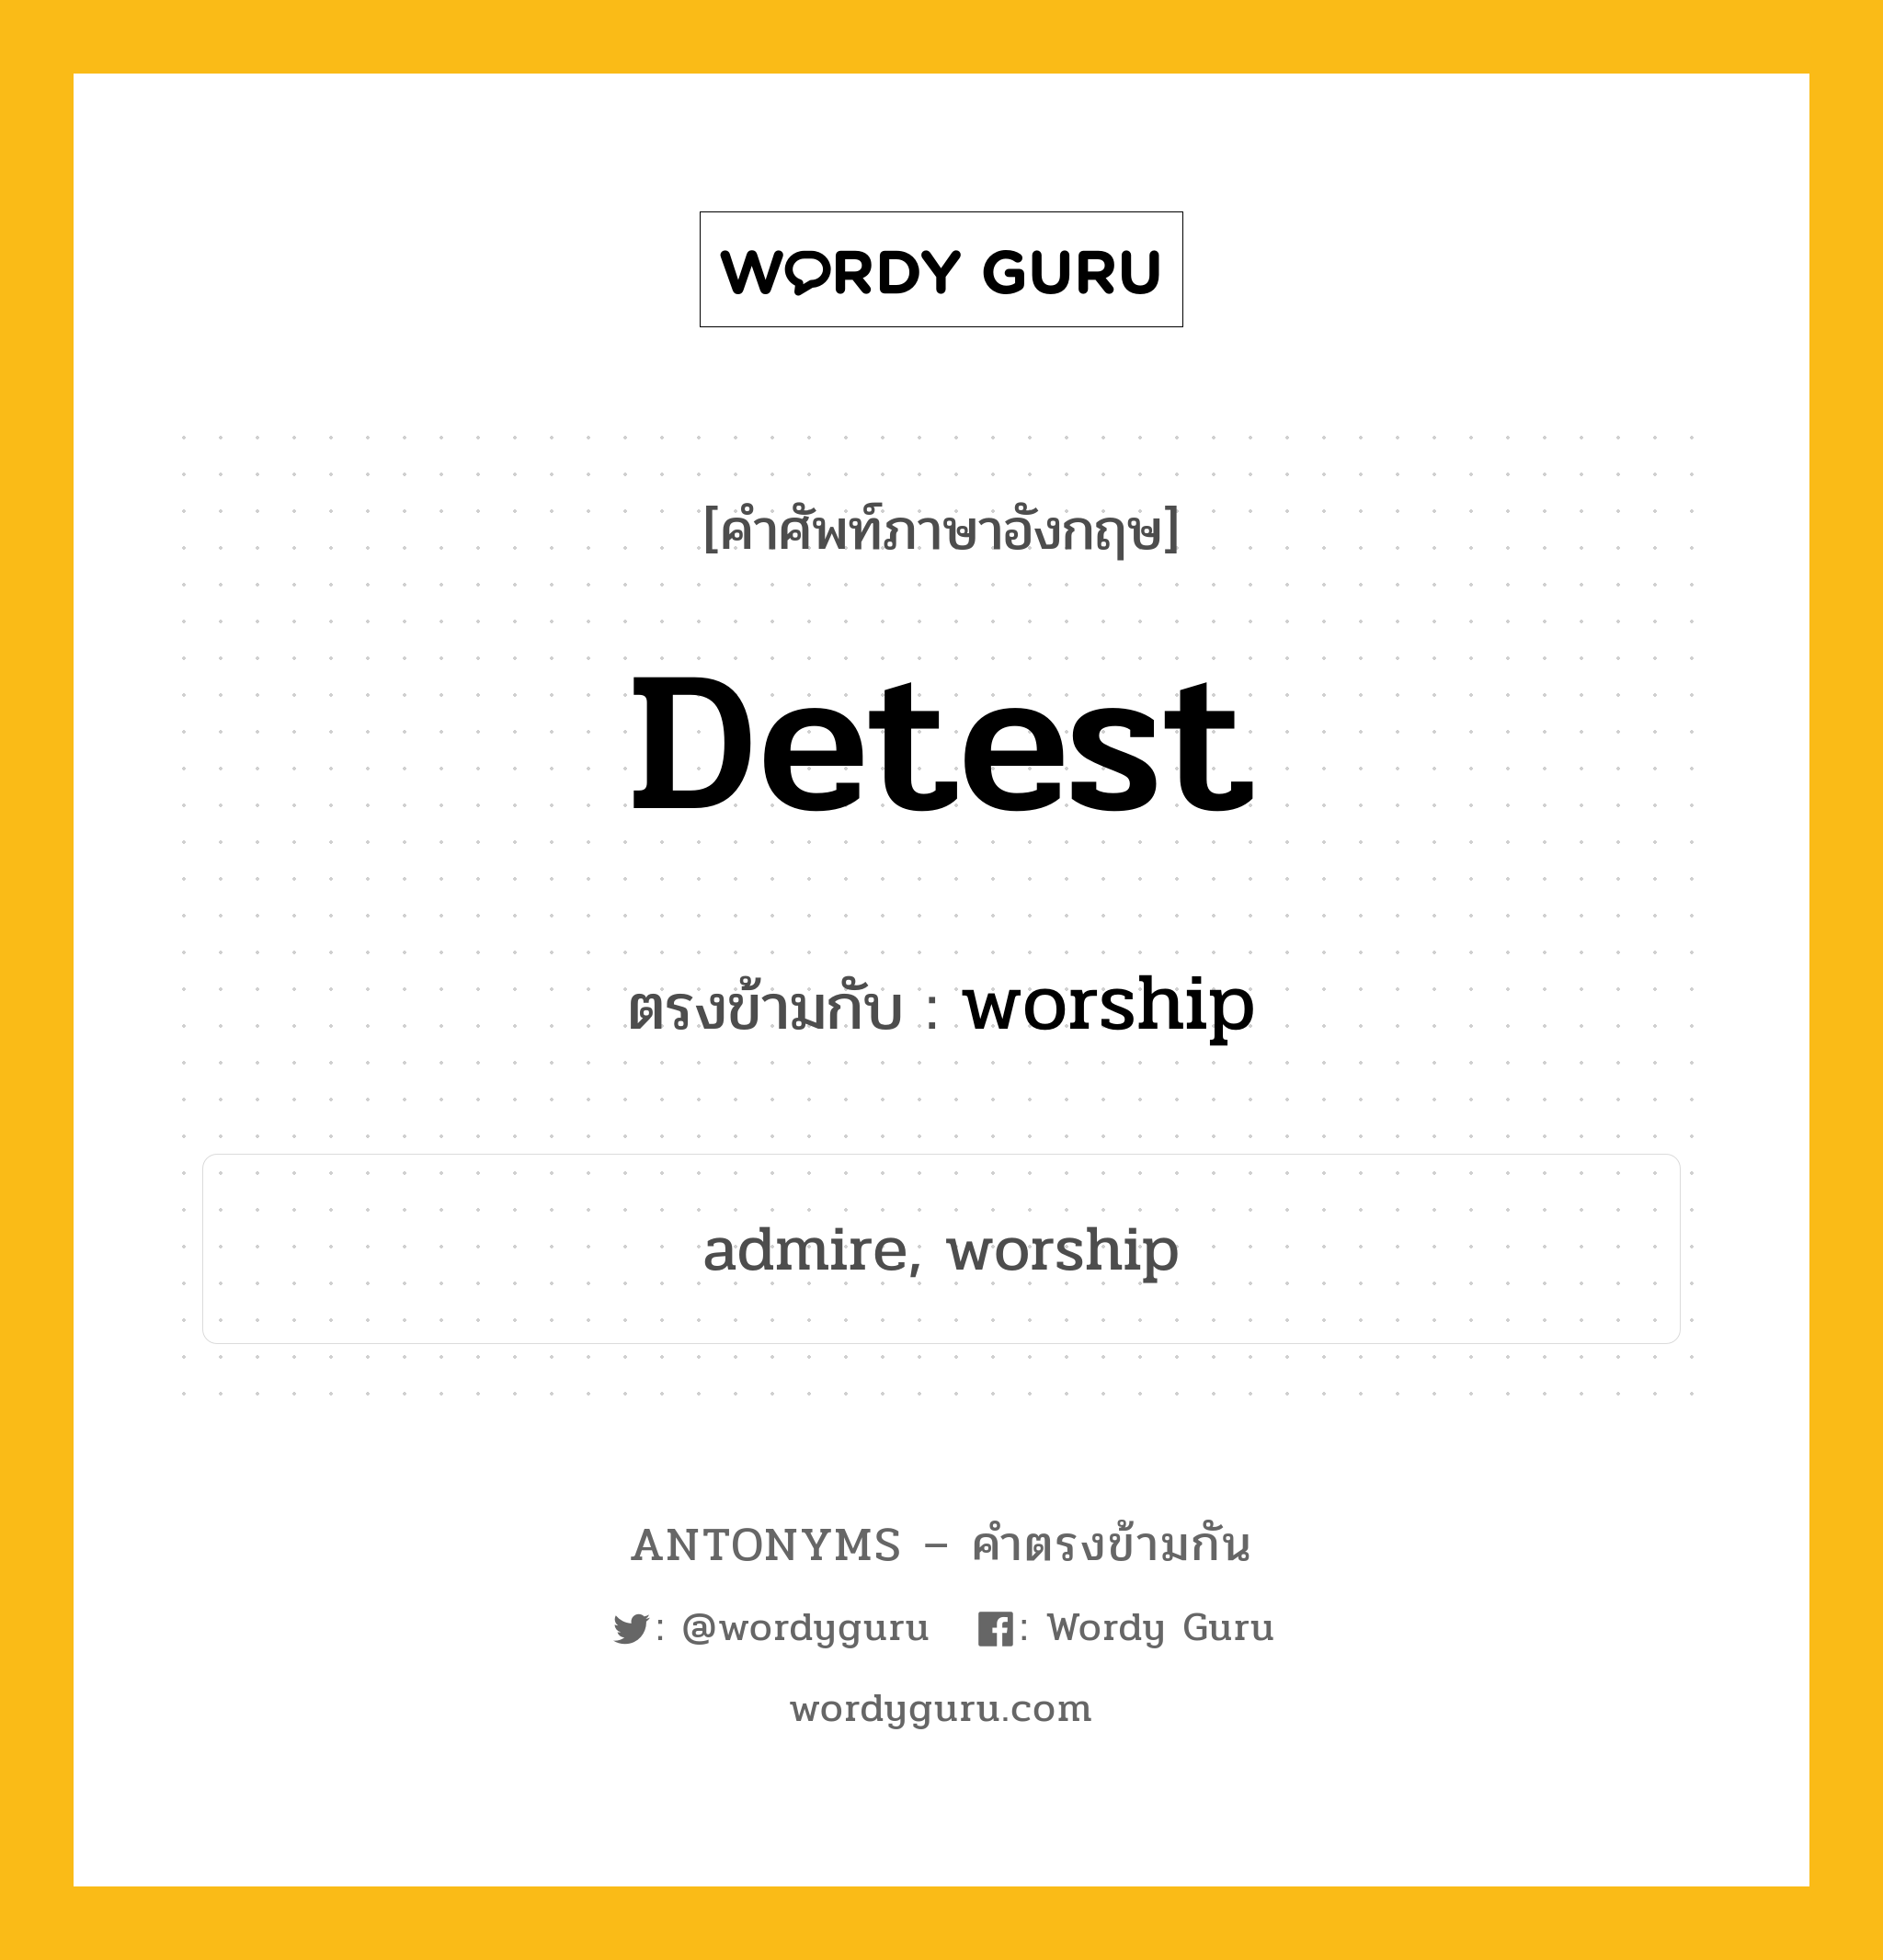 detest เป็นคำตรงข้ามกับคำไหนบ้าง?, คำศัพท์ภาษาอังกฤษ detest ตรงข้ามกับ worship หมวด worship